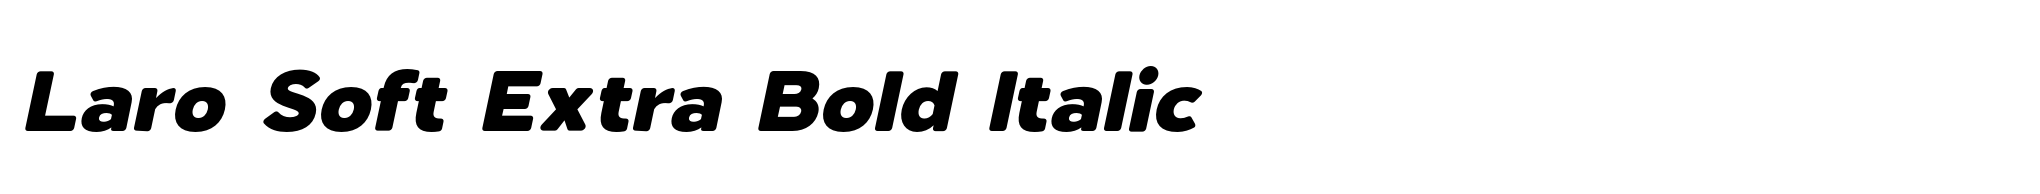 Laro Soft Extra Bold Italic image